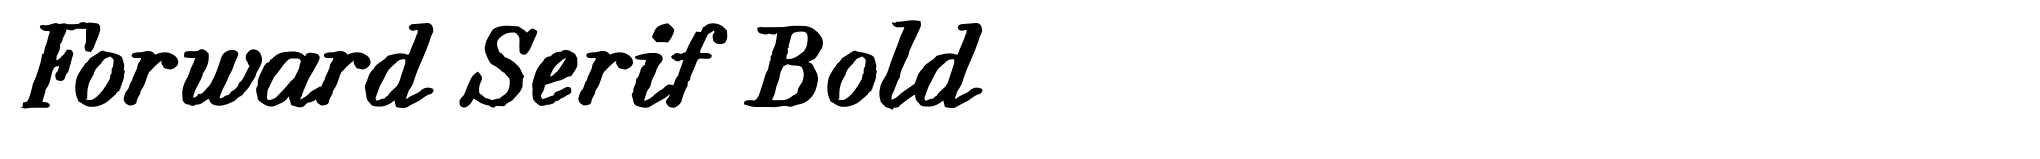 Forward Serif Bold image